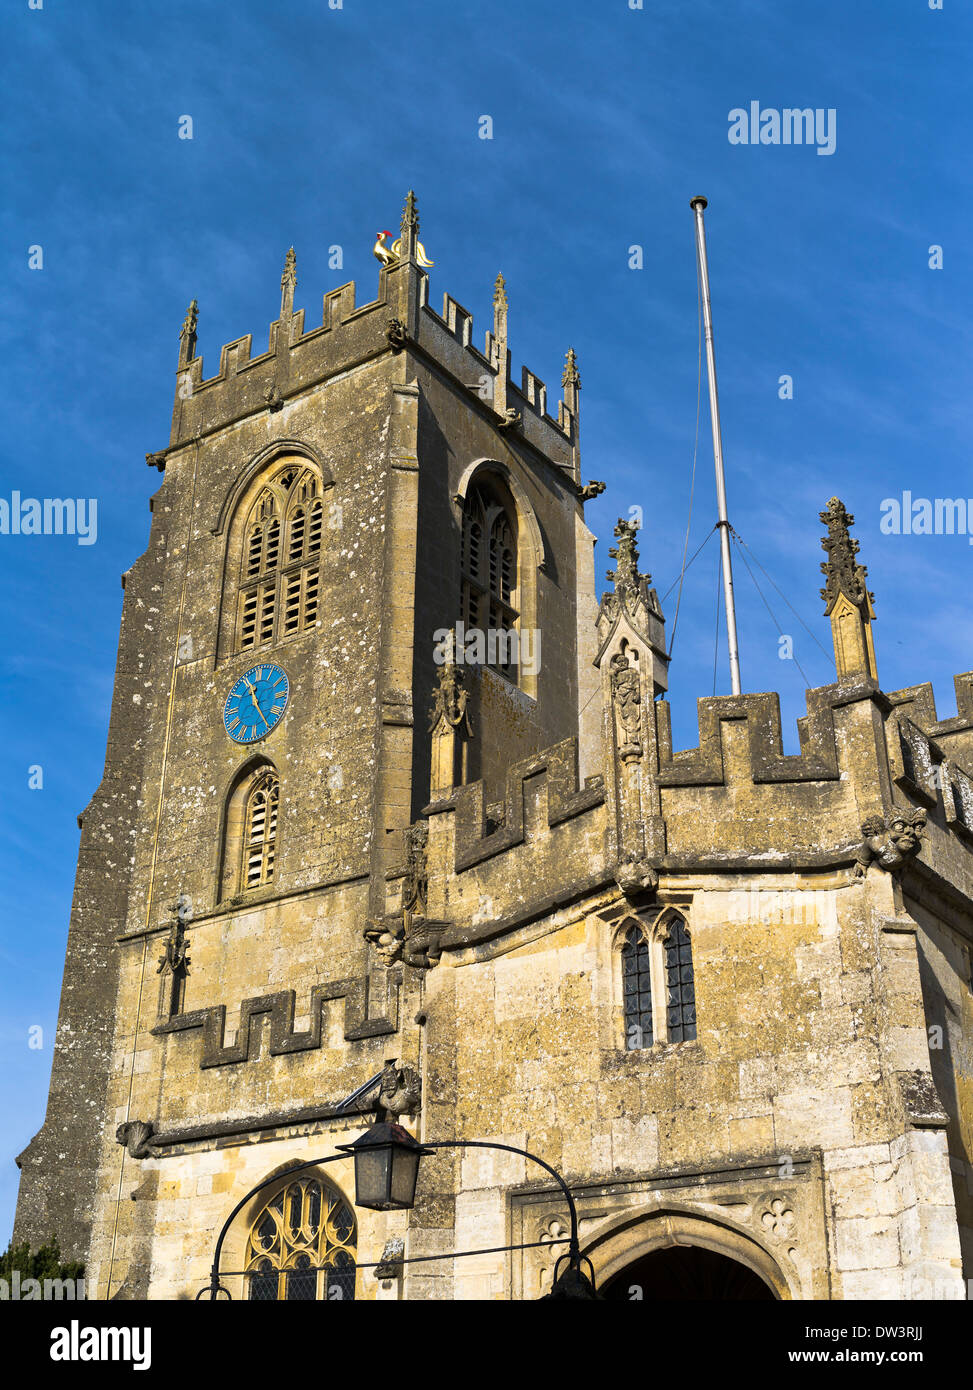 dh St Peters Church cotswolds UK WINCHCOMBE GLOUCESTERSHIRE Cotswold Anglais église paroissiale clocher beffroi avec gargouilles angleterre médiévale Banque D'Images